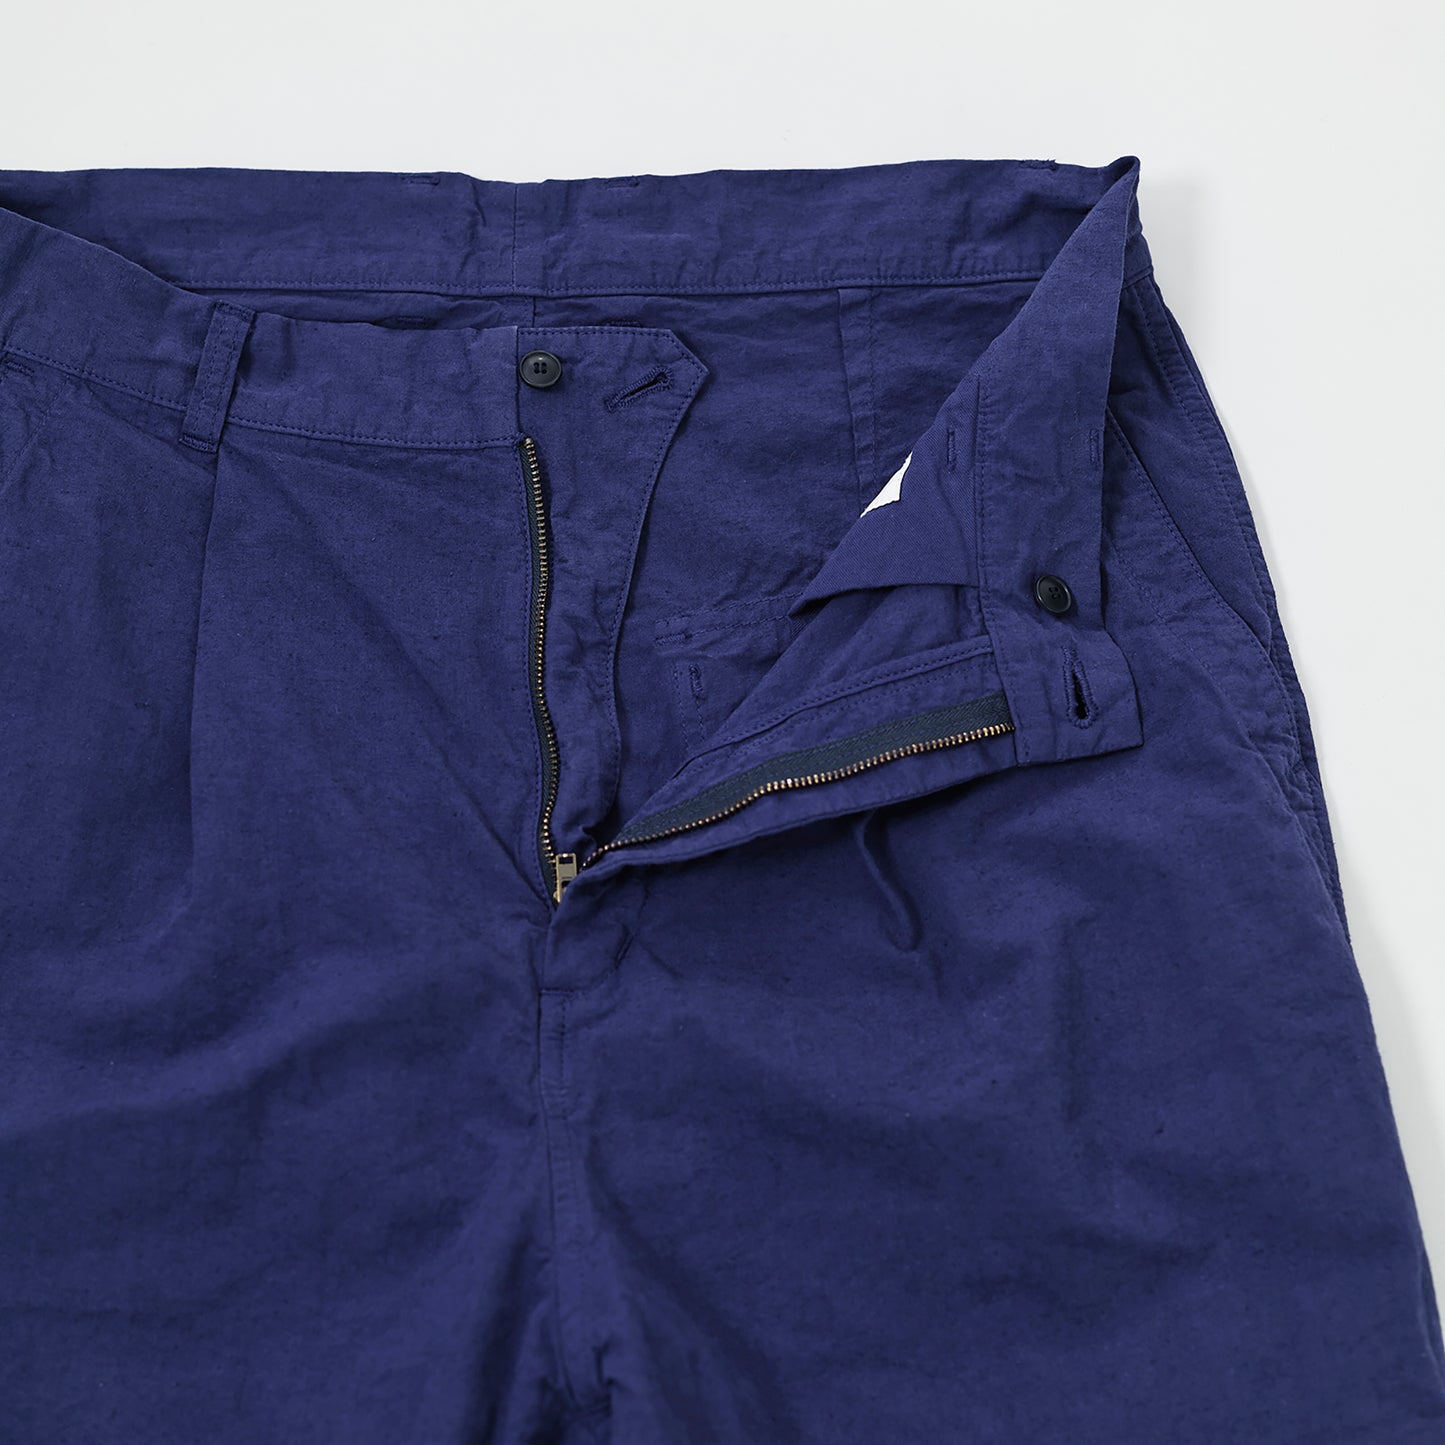 SAGE DE CRET 31-20-8274 9/10 length one-tuck wide Pants- Blue